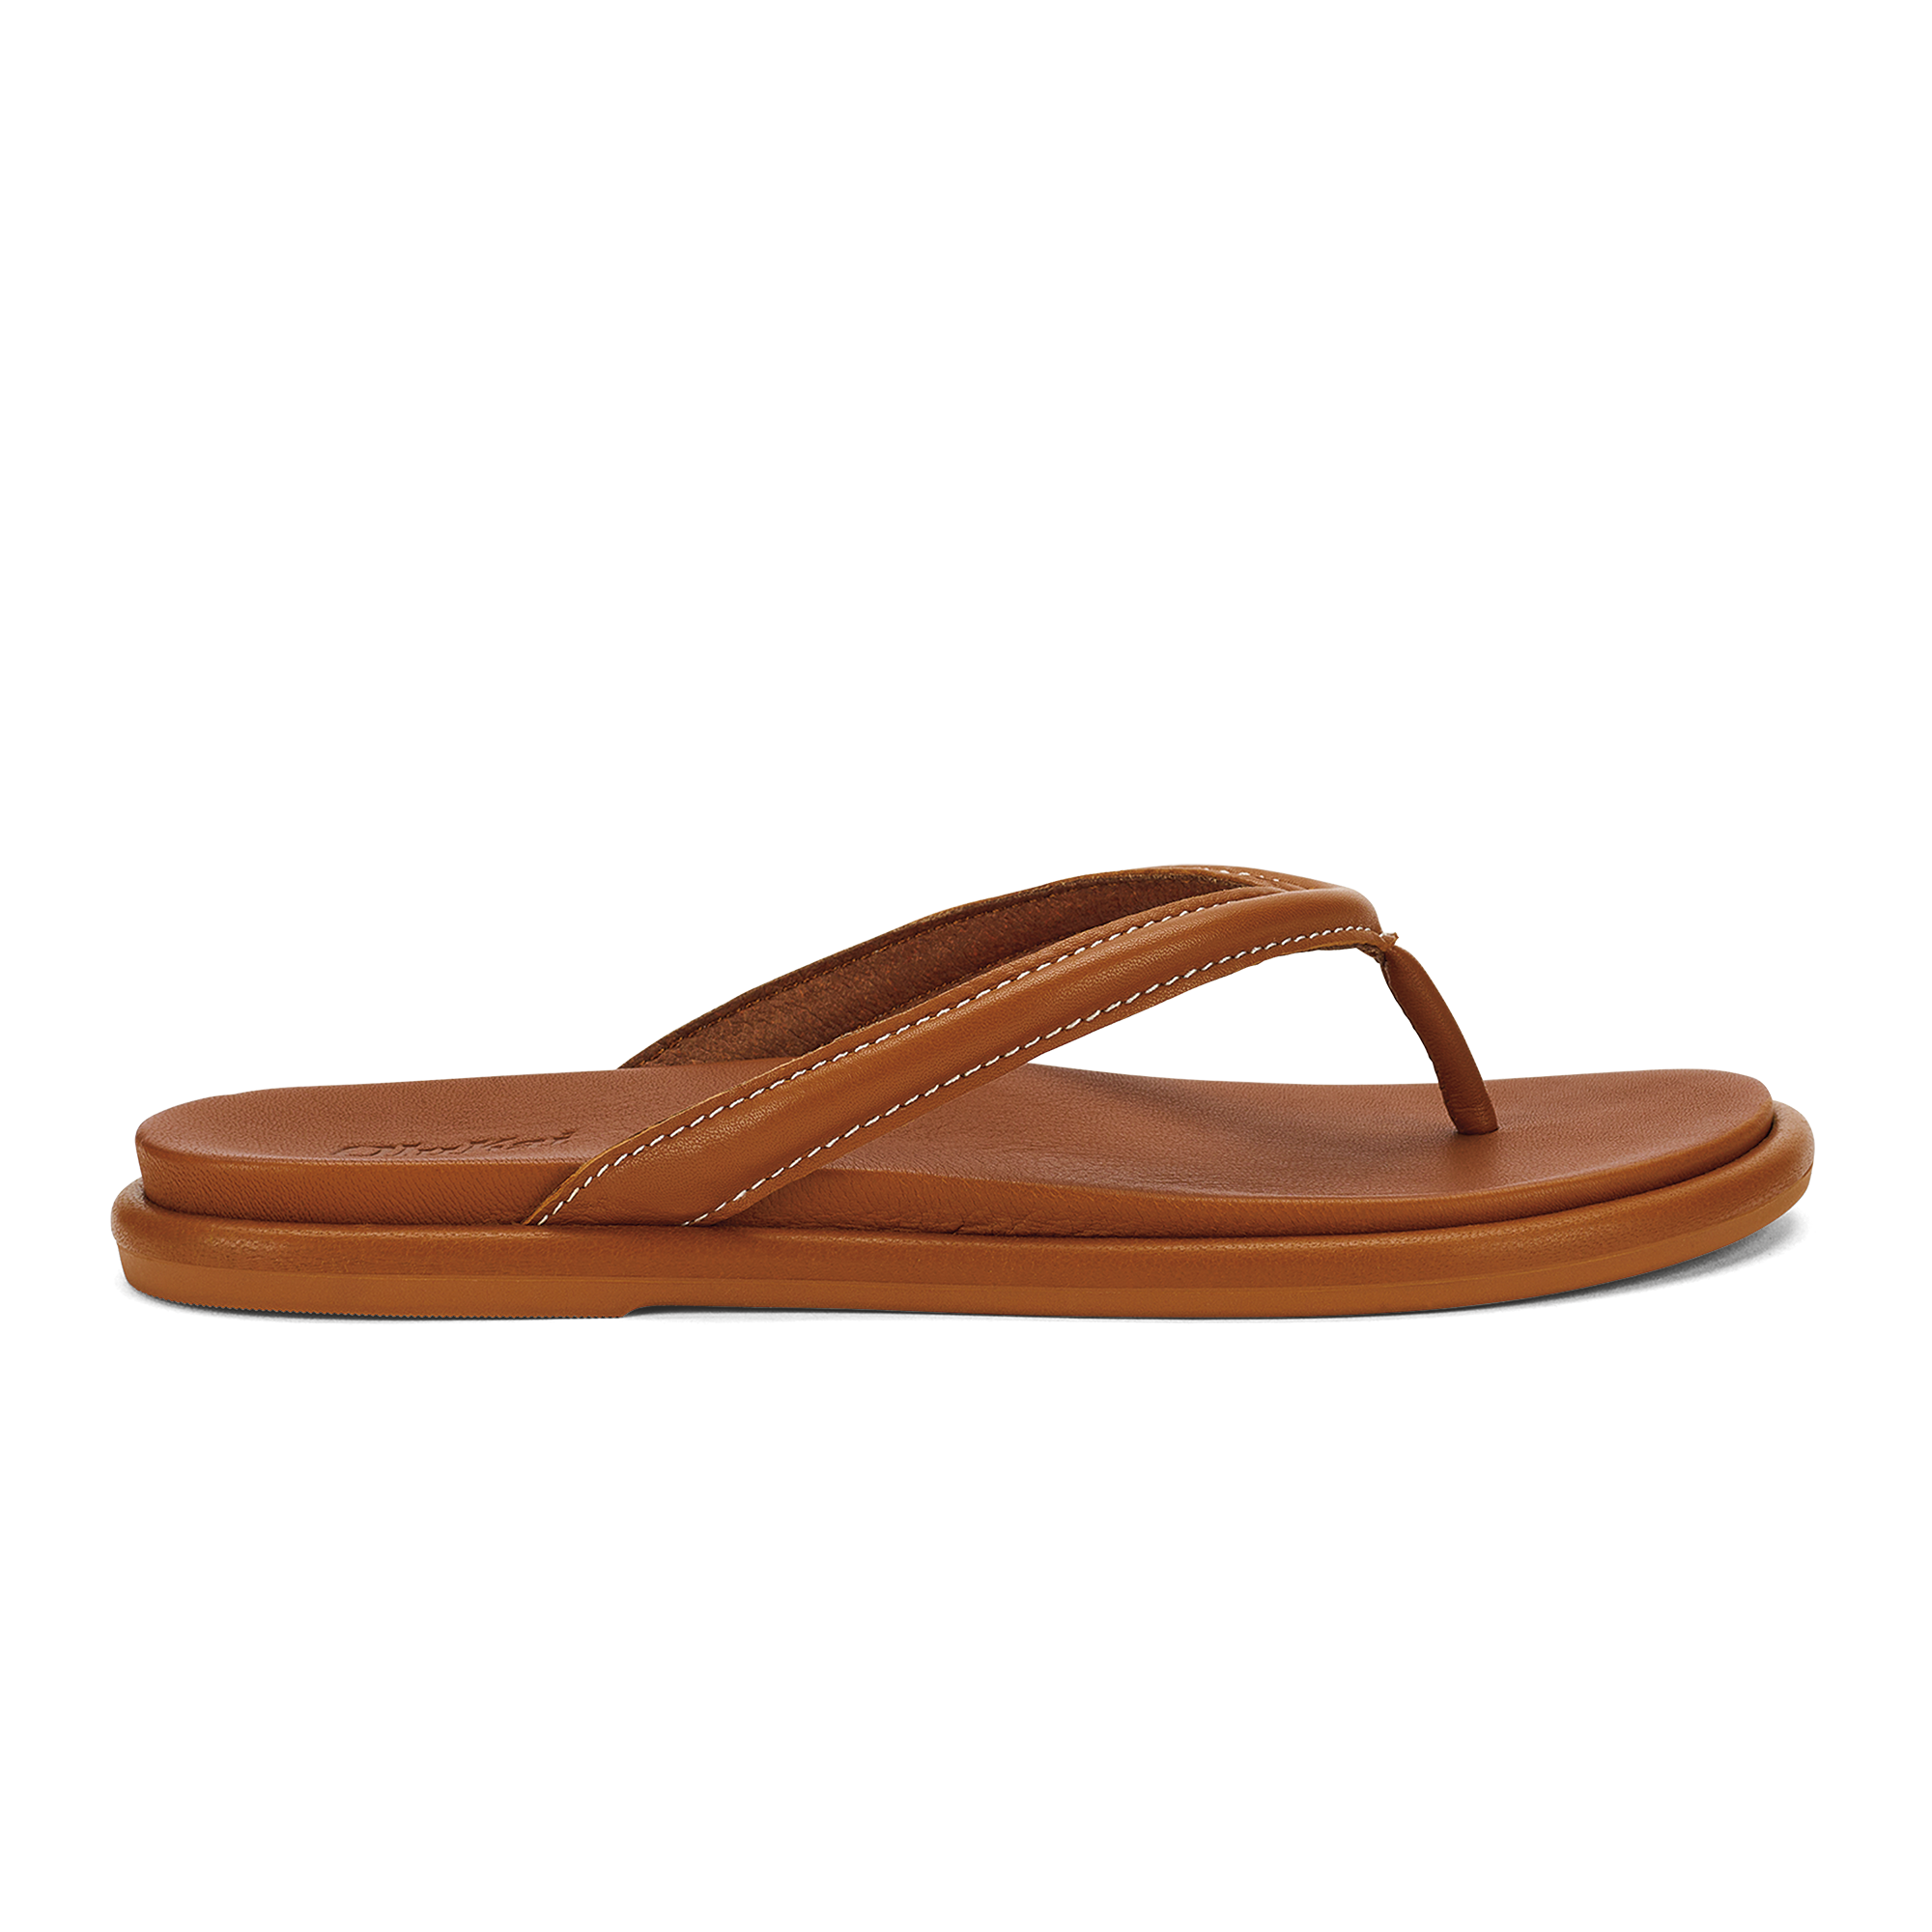 SEABIRD WOVEN Tan Leather Flip Flop Sandal